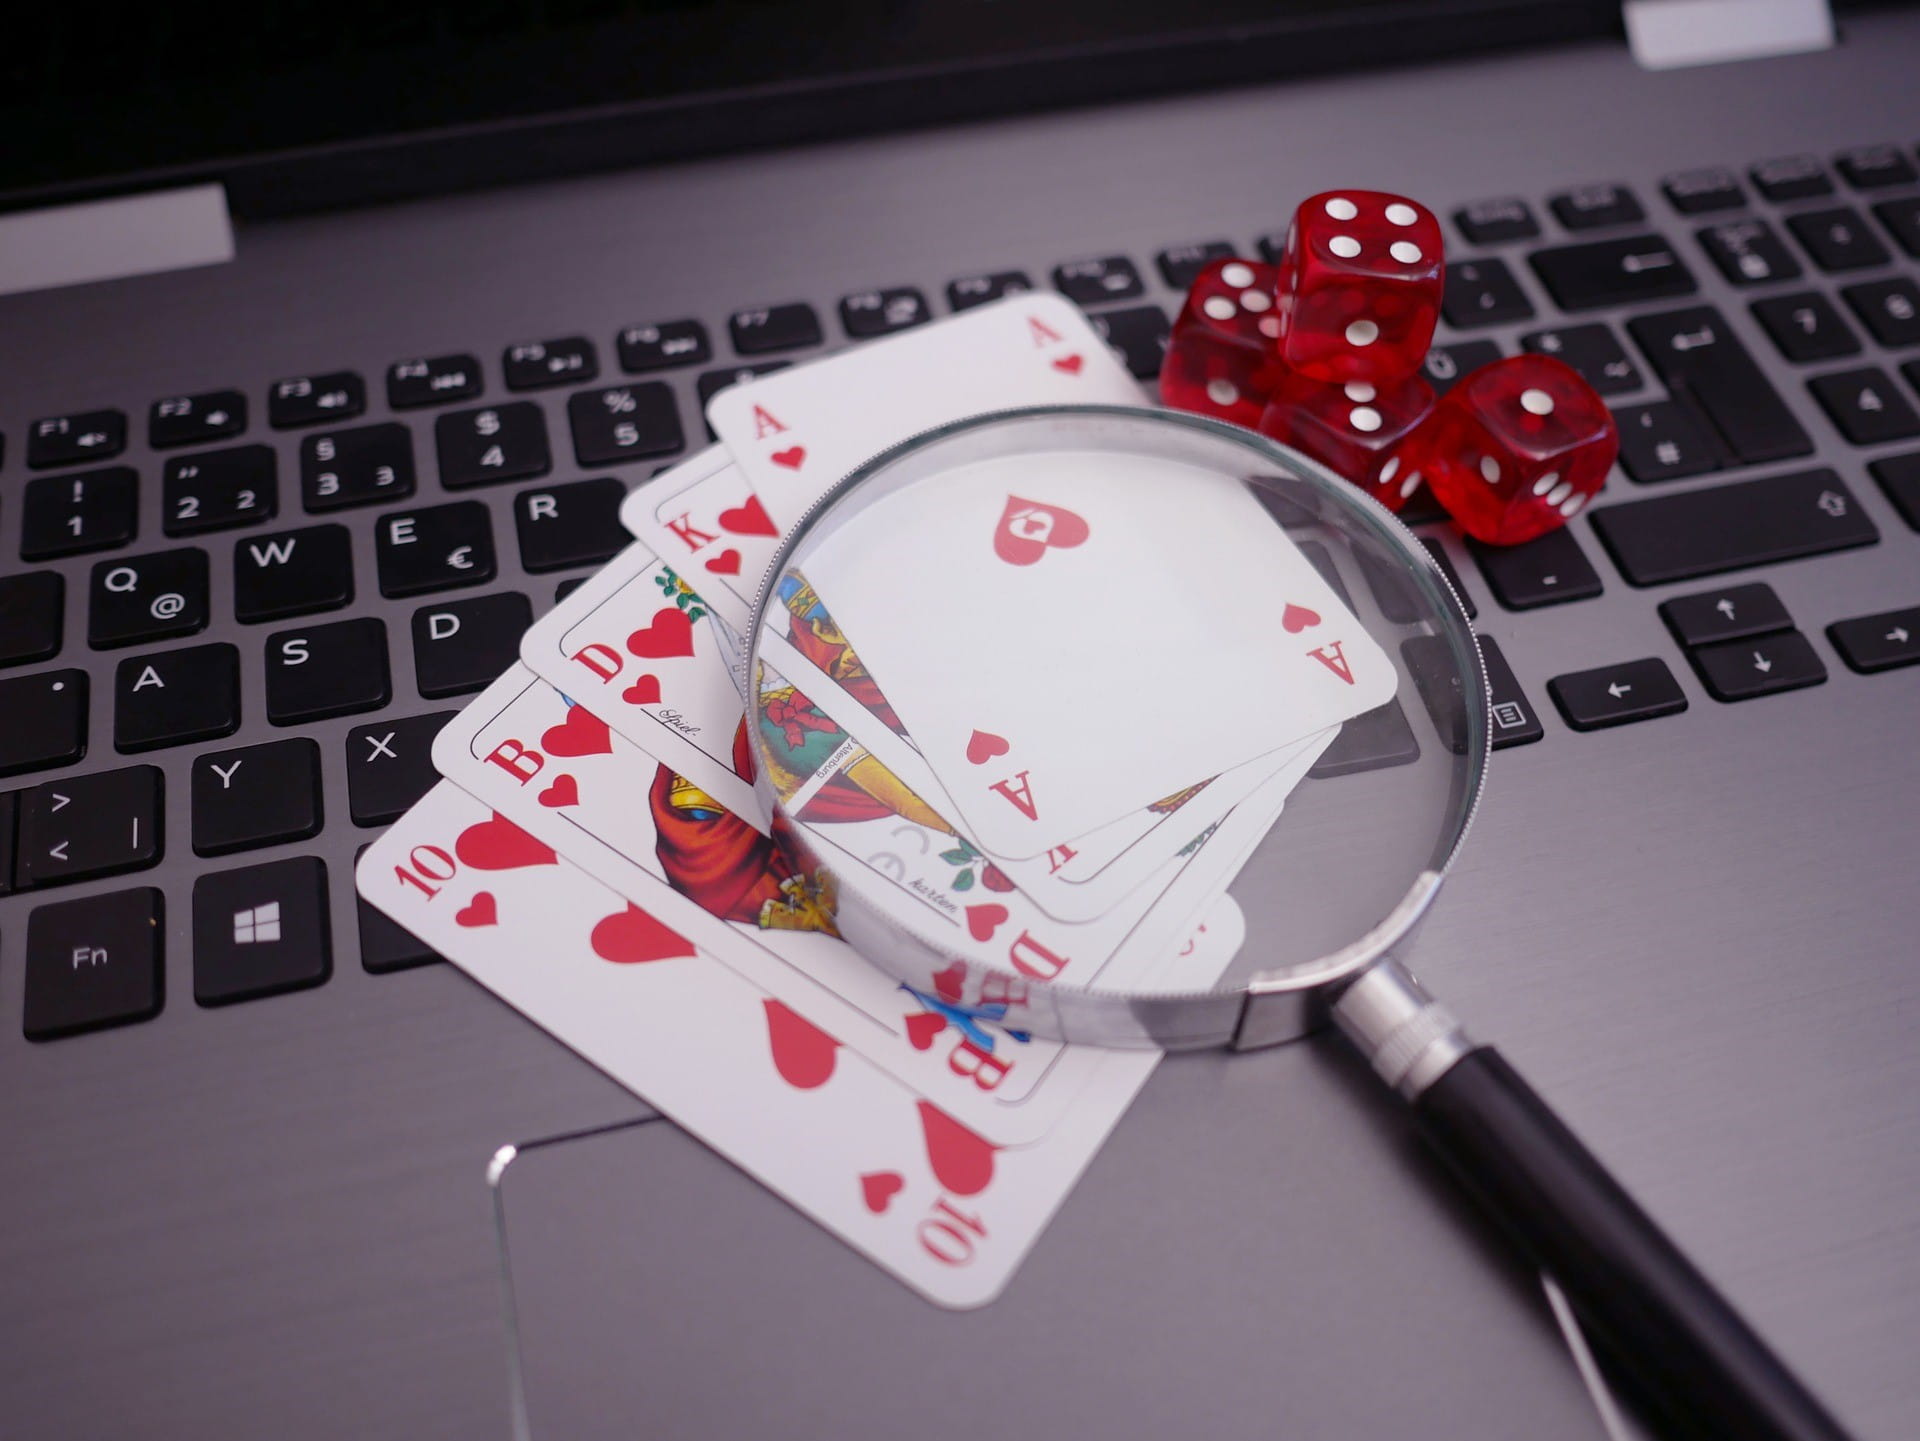 Auf einer Tastatur liegen Pokerkarten, vier rote Würfel und eine Lupe.